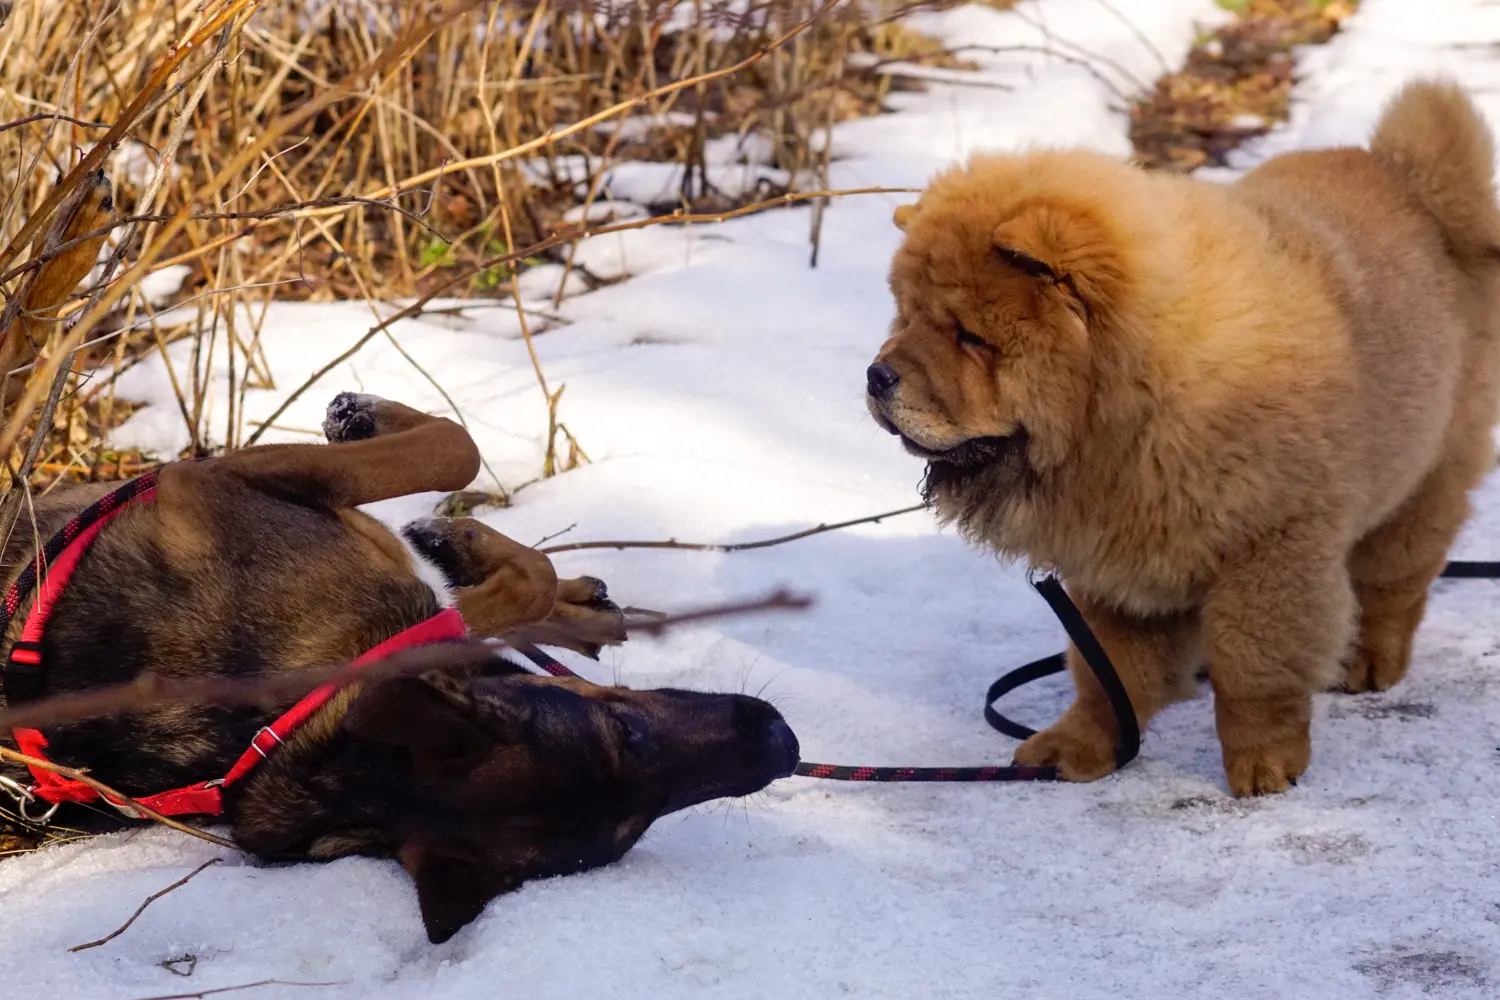 Hundebegegnung zwischen Chow-Chow und Schäferhund im Schnee.